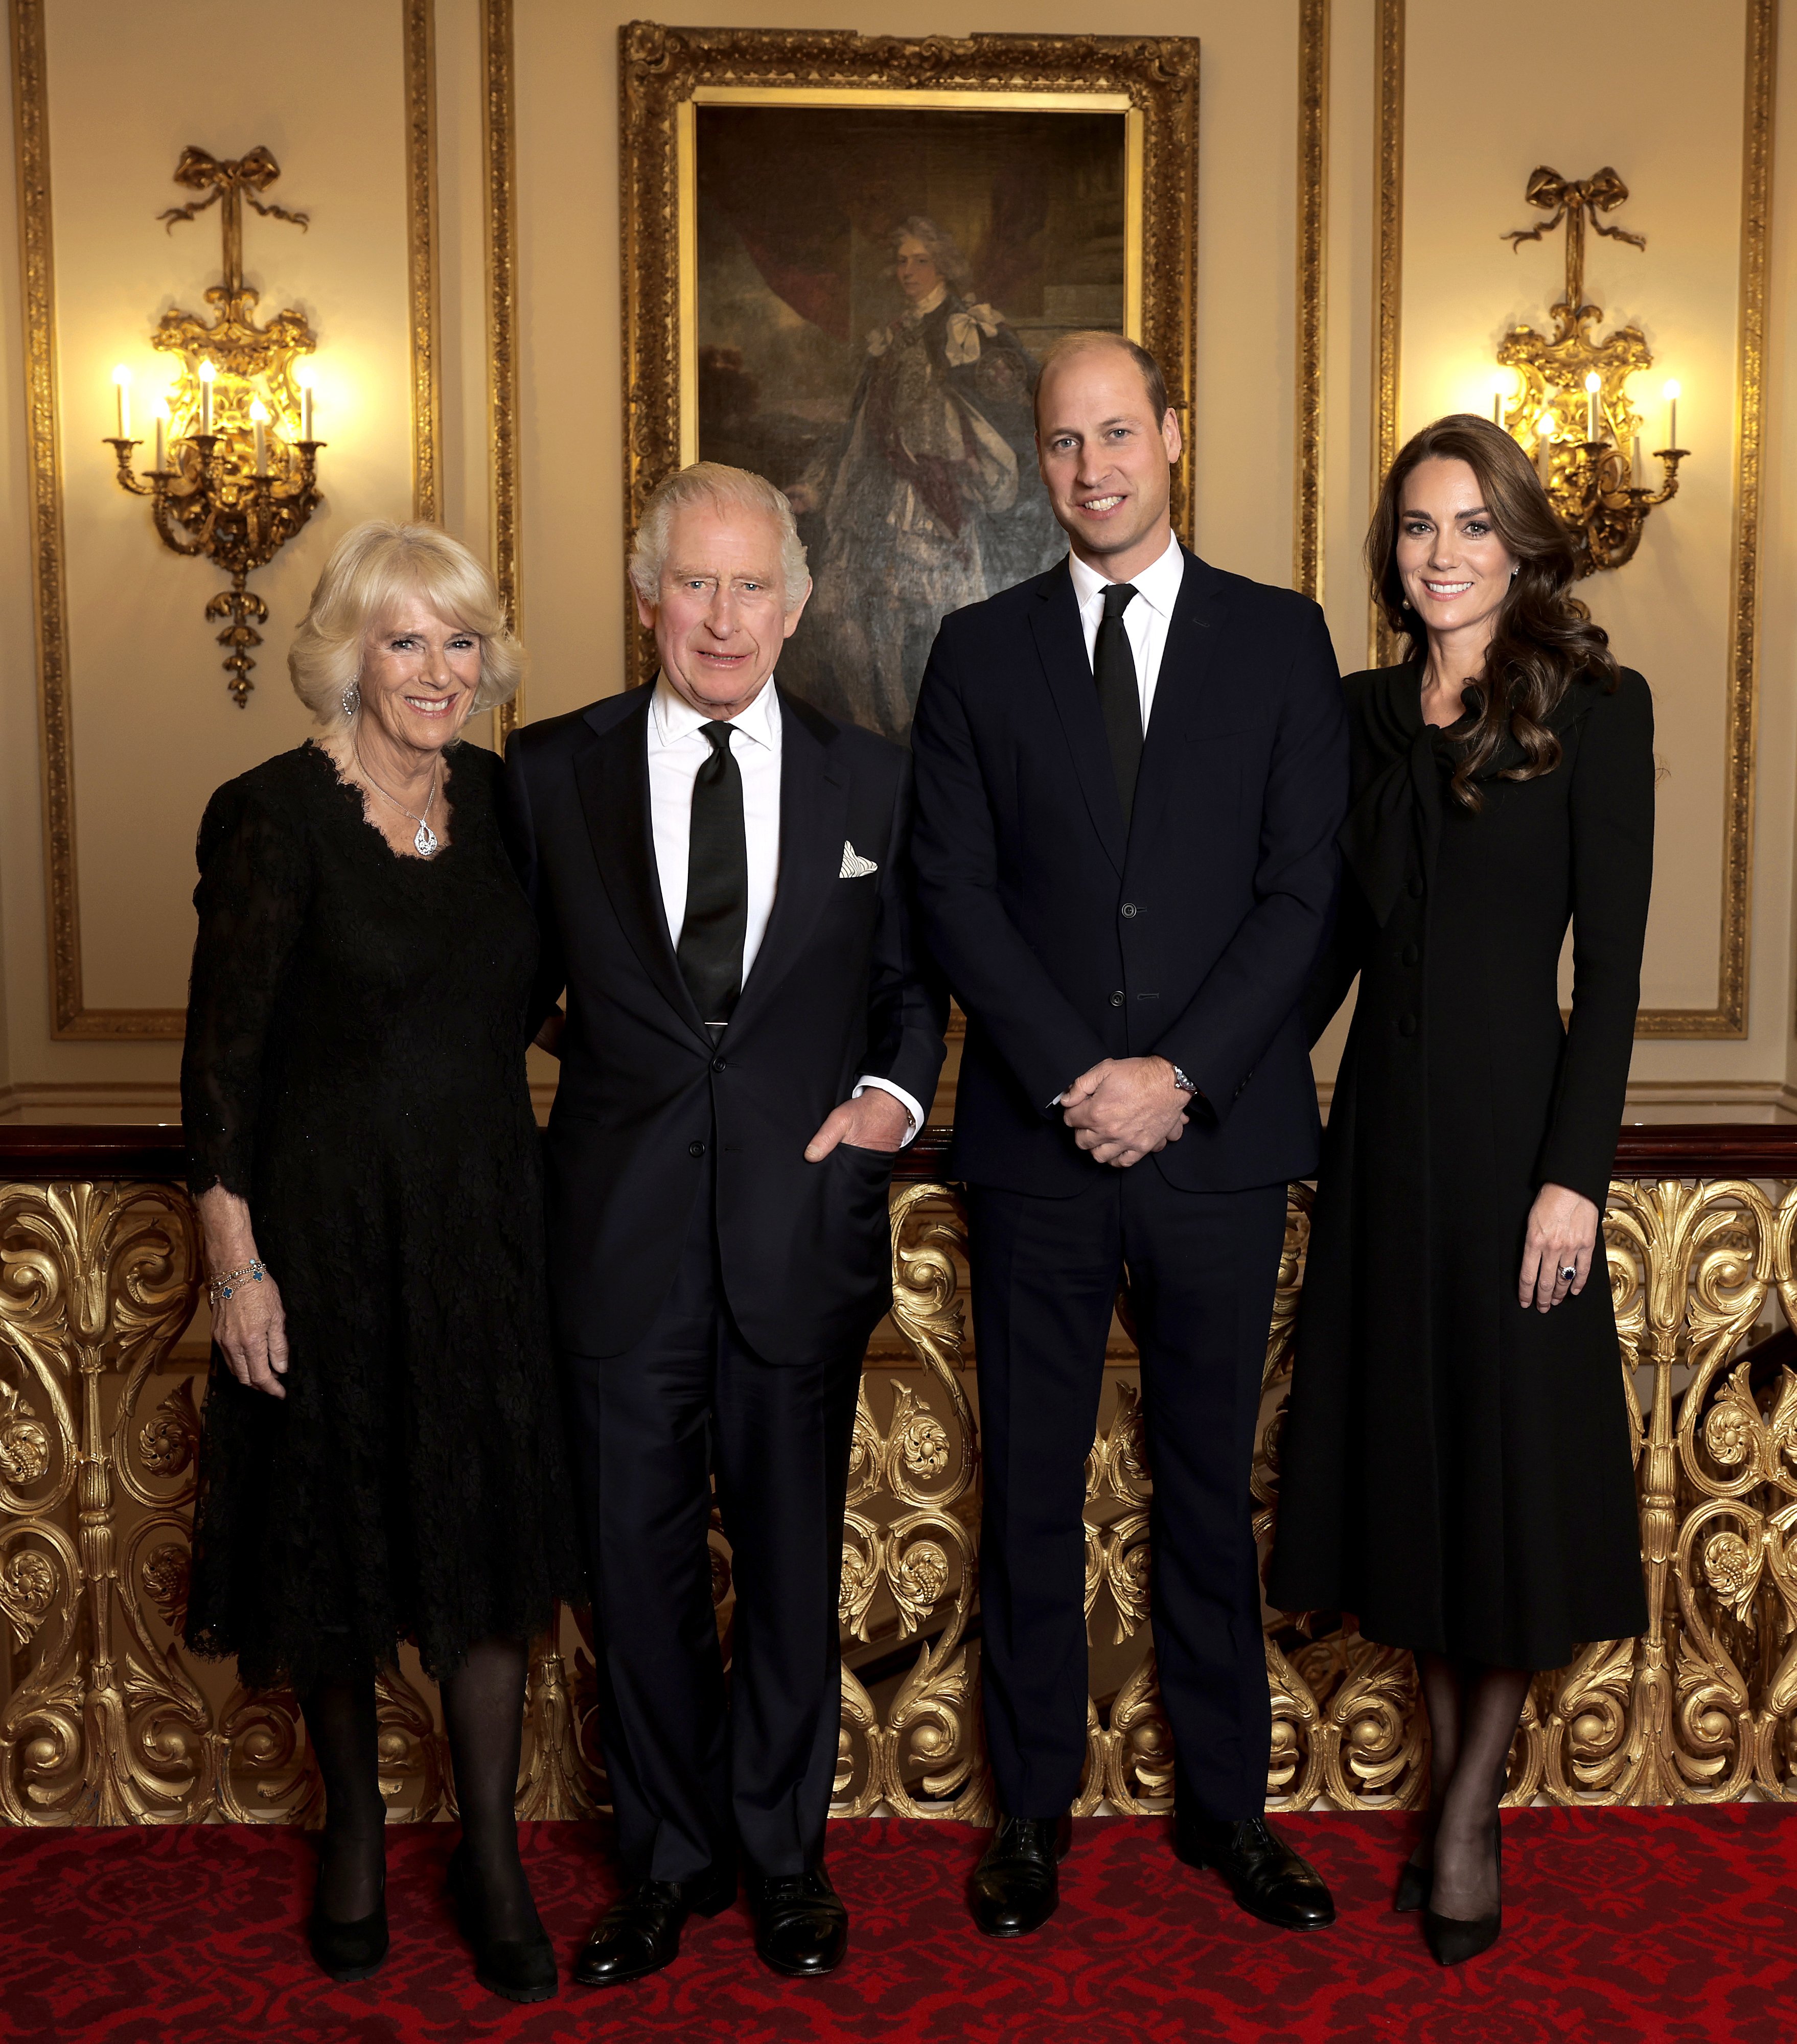 El rey Charles III, la reina consorte Camilla, el príncipe William y Kate Middleton en Londres, en 2022. | Foto: Getty Images